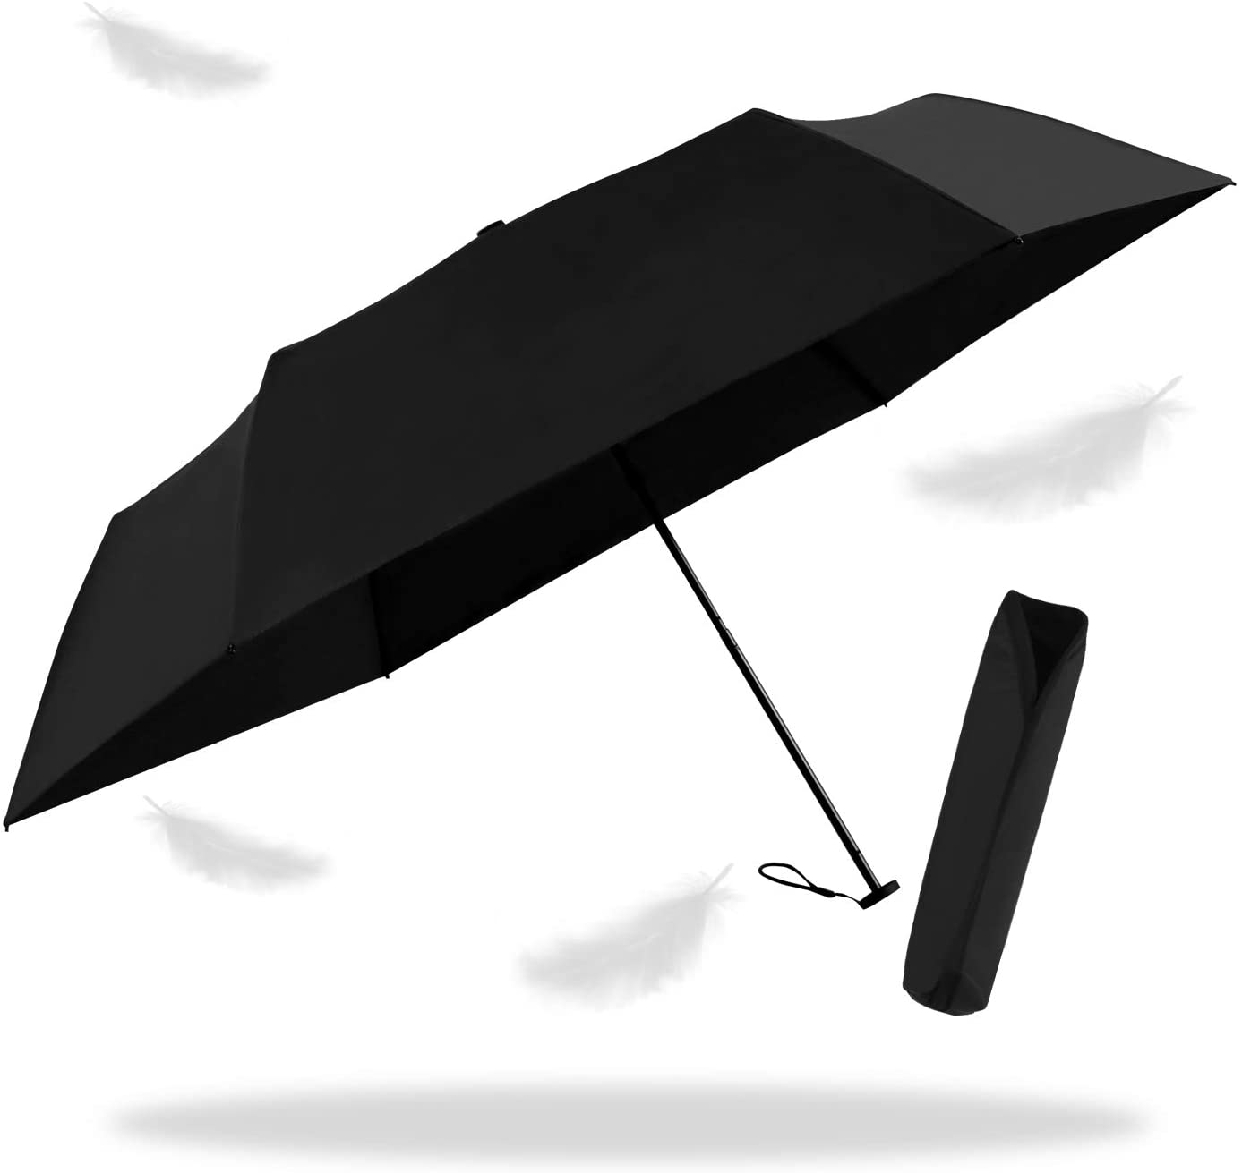 TaiYou(タイヨウ) 晴雨兼用折りたたみ日傘の商品画像サムネ2 